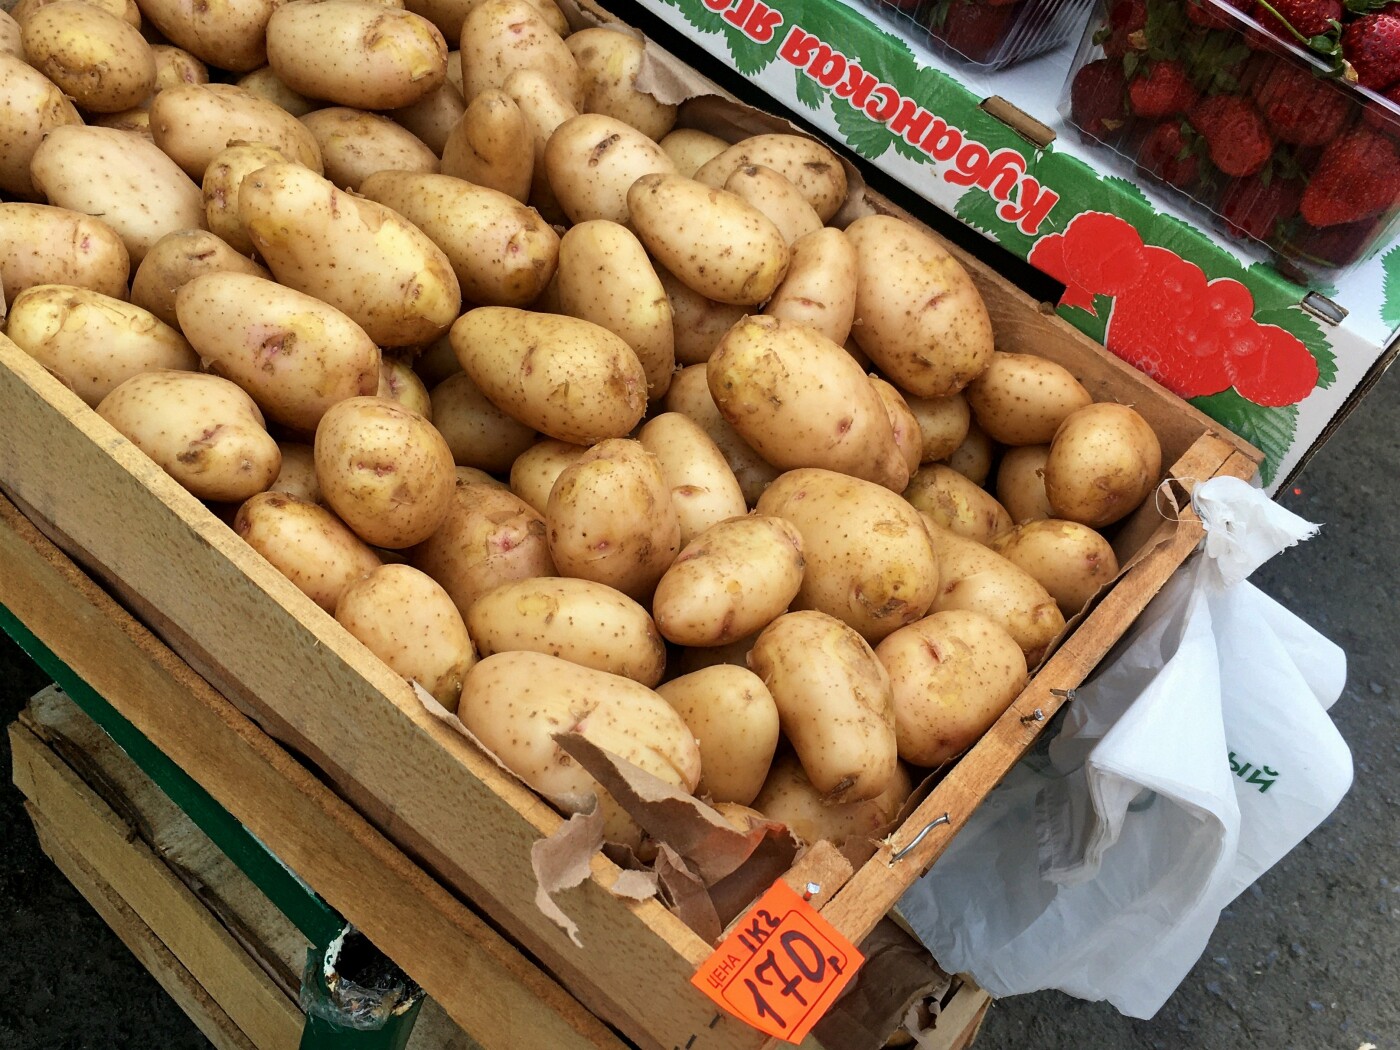 На молодой картофель в середине мая цены разные